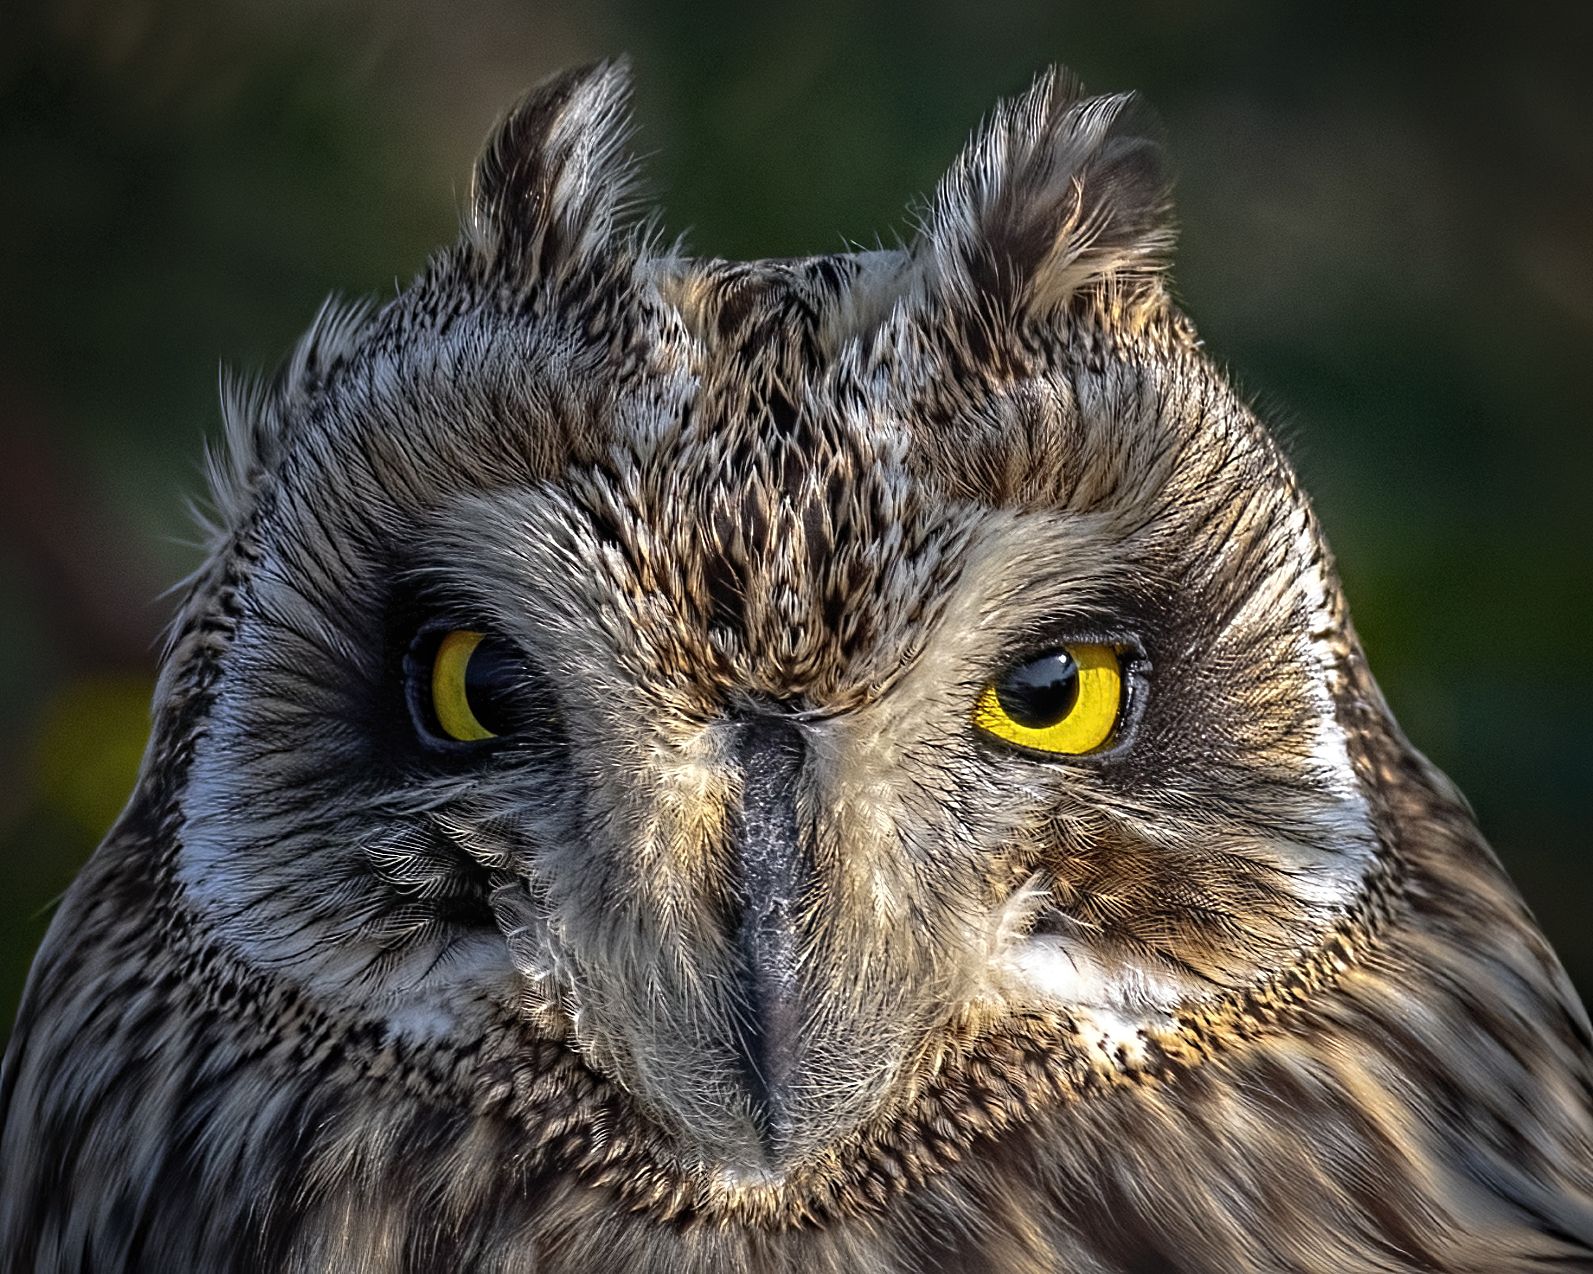 Short-eared Owl nasarobar birds, Arpan Saha